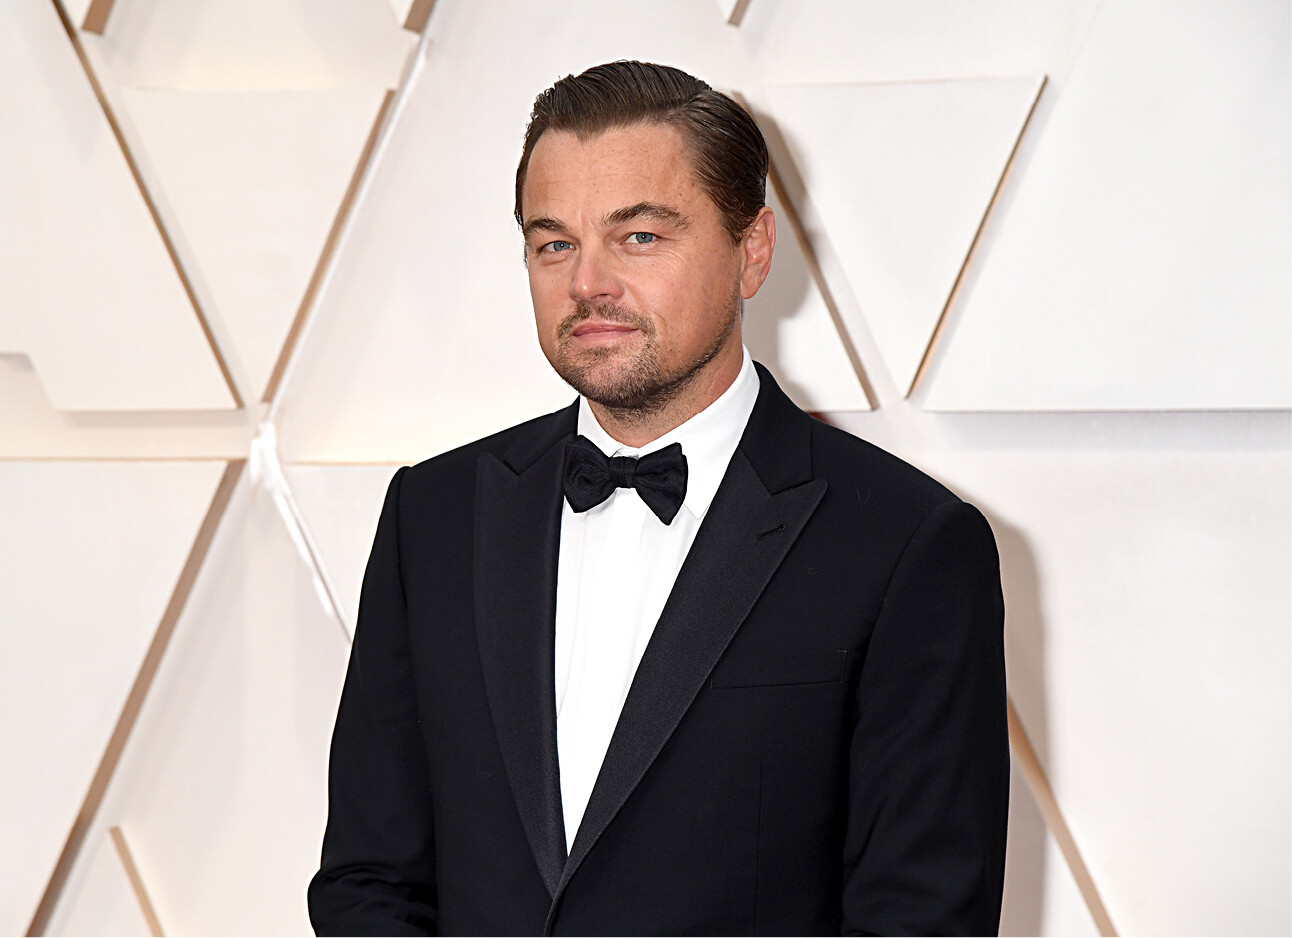 De bizarre seksroddel die rondgaat over Leonardo DiCaprio 